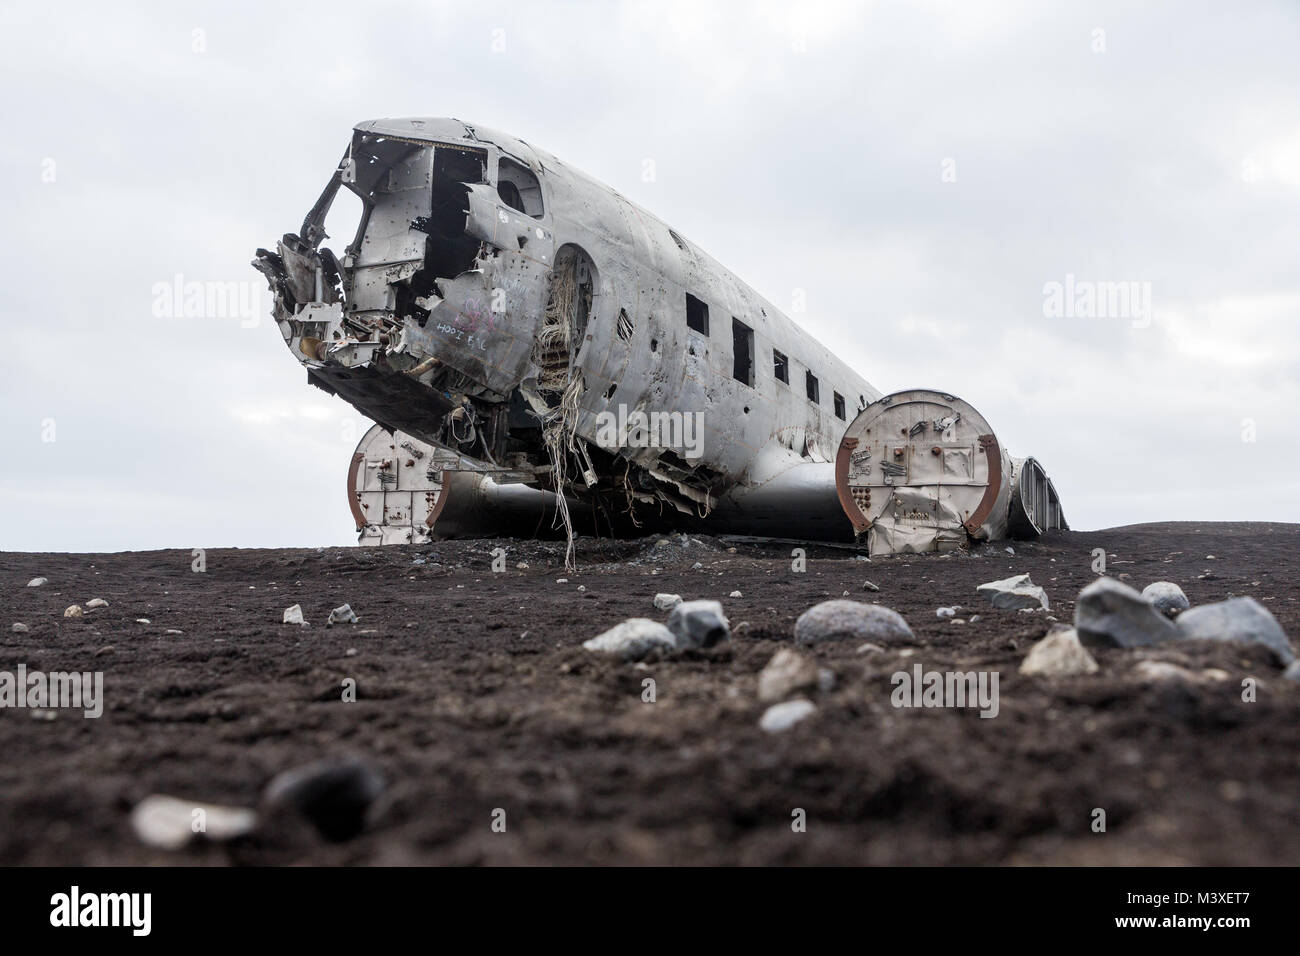 Abonded Airplane DC wreck in Iceland solheimasandur beach Stock Photo